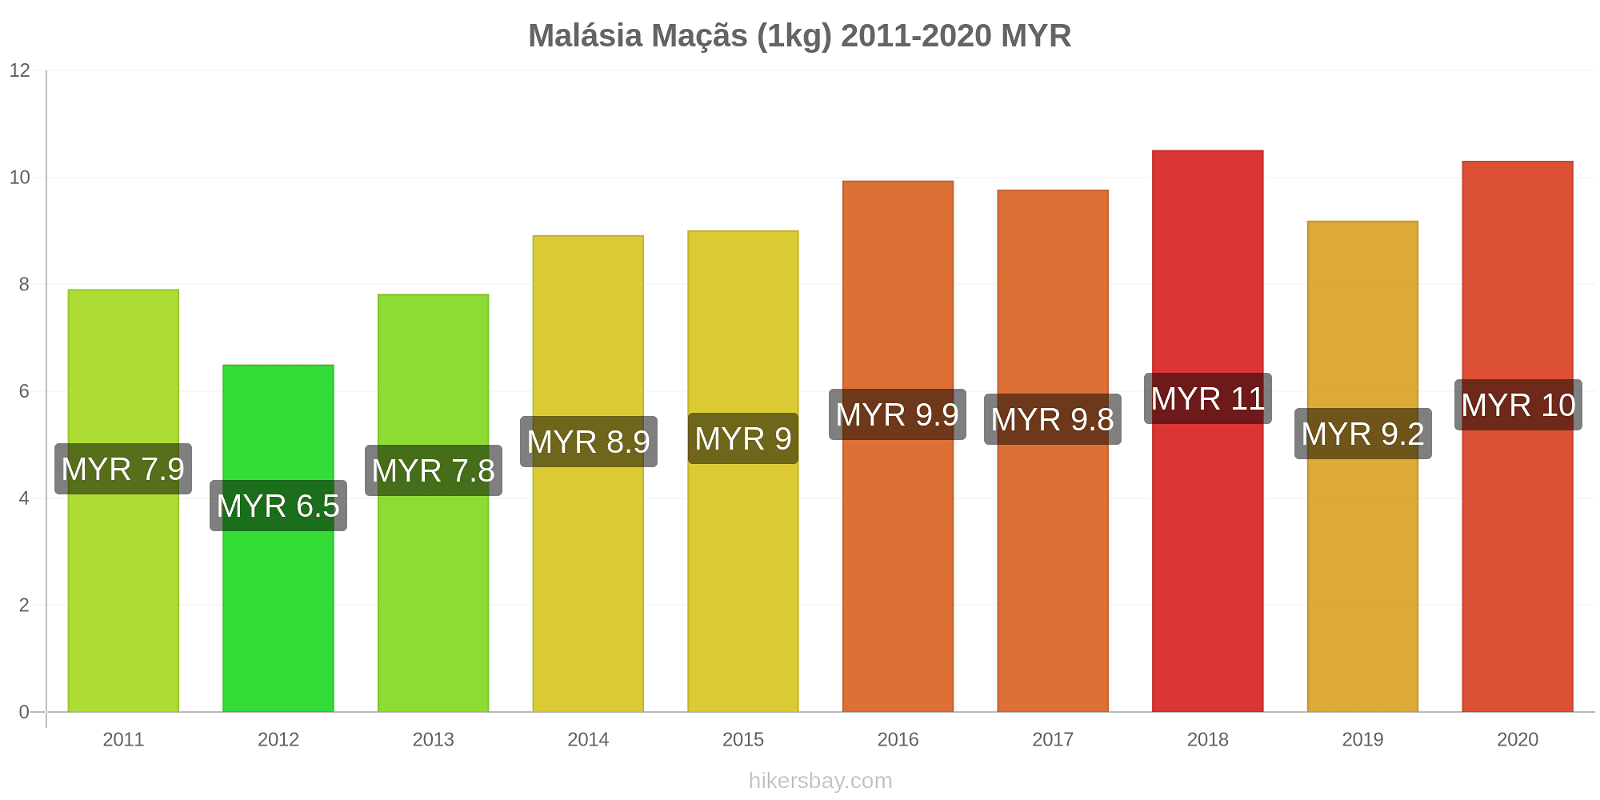 Malásia variação de preço Maçãs (1kg) hikersbay.com